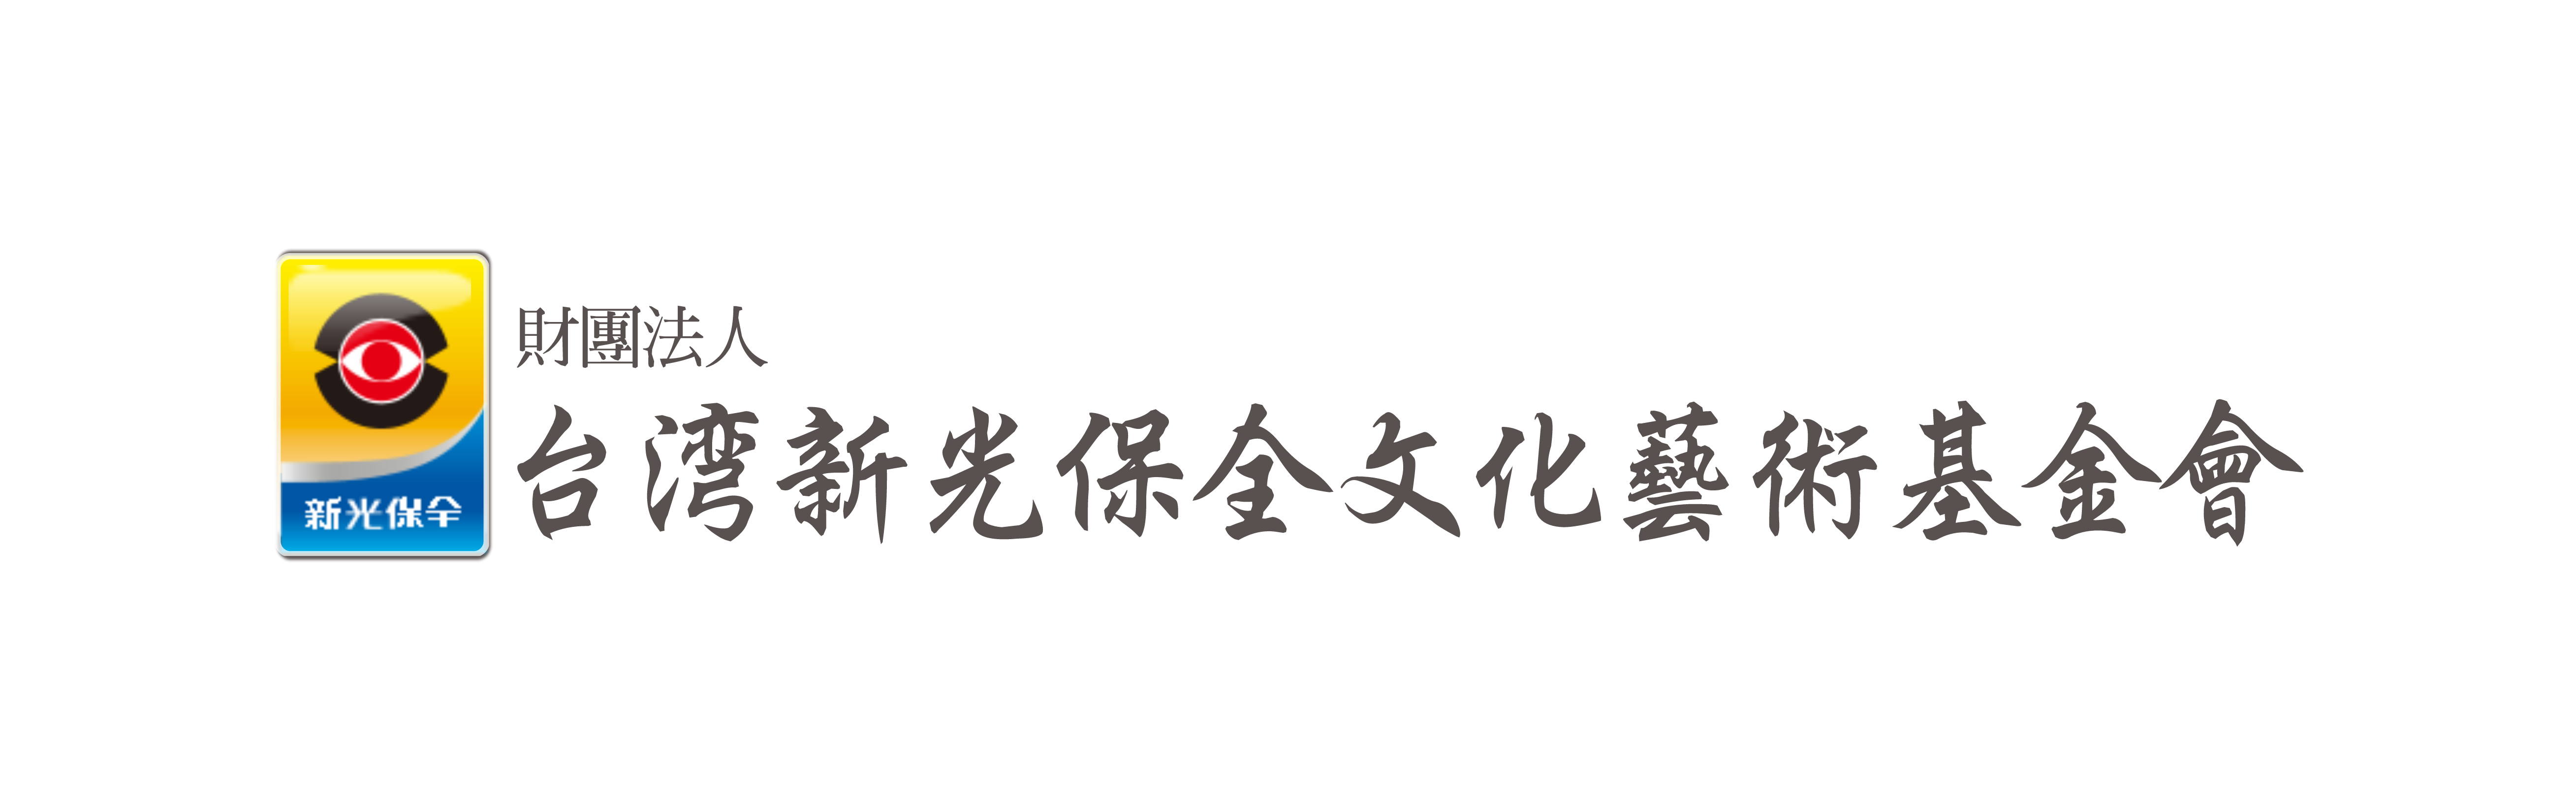 台灣新光保全文化藝術基金會